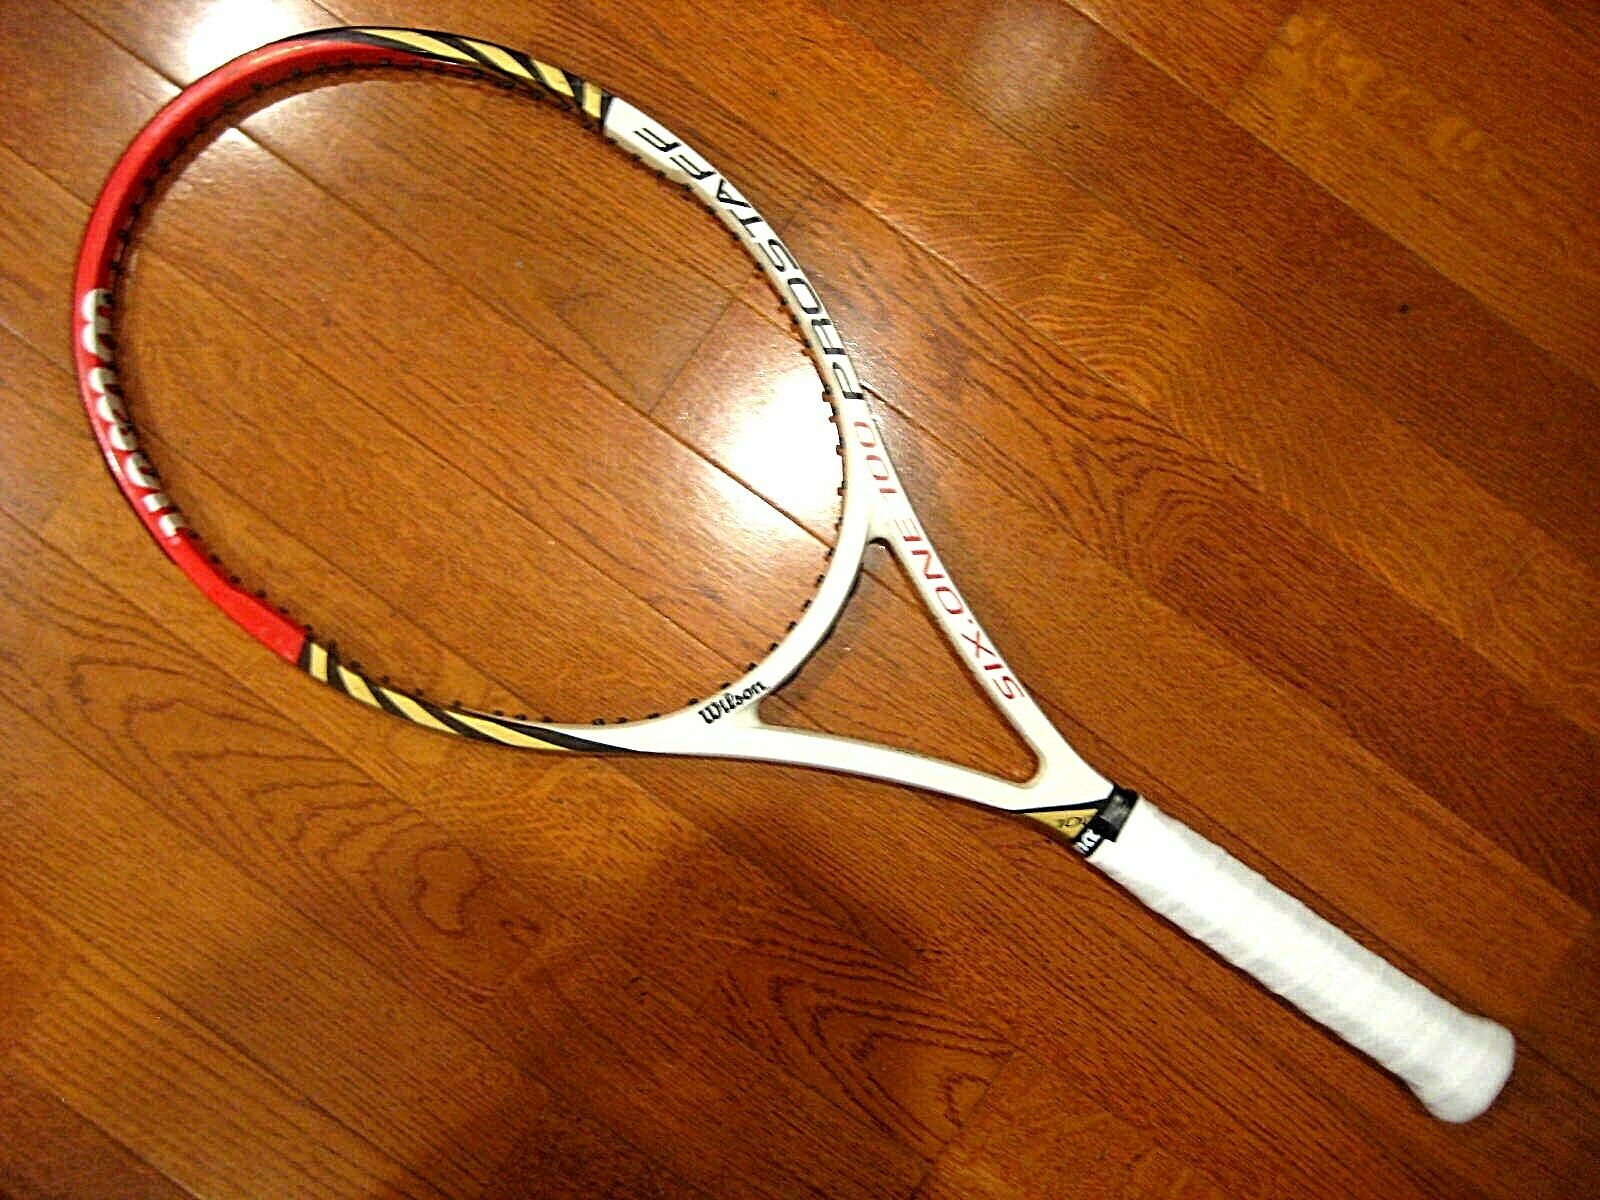 Wilson Blx Prostaff Six.one 100 Tennis Racquet - 4 3/8